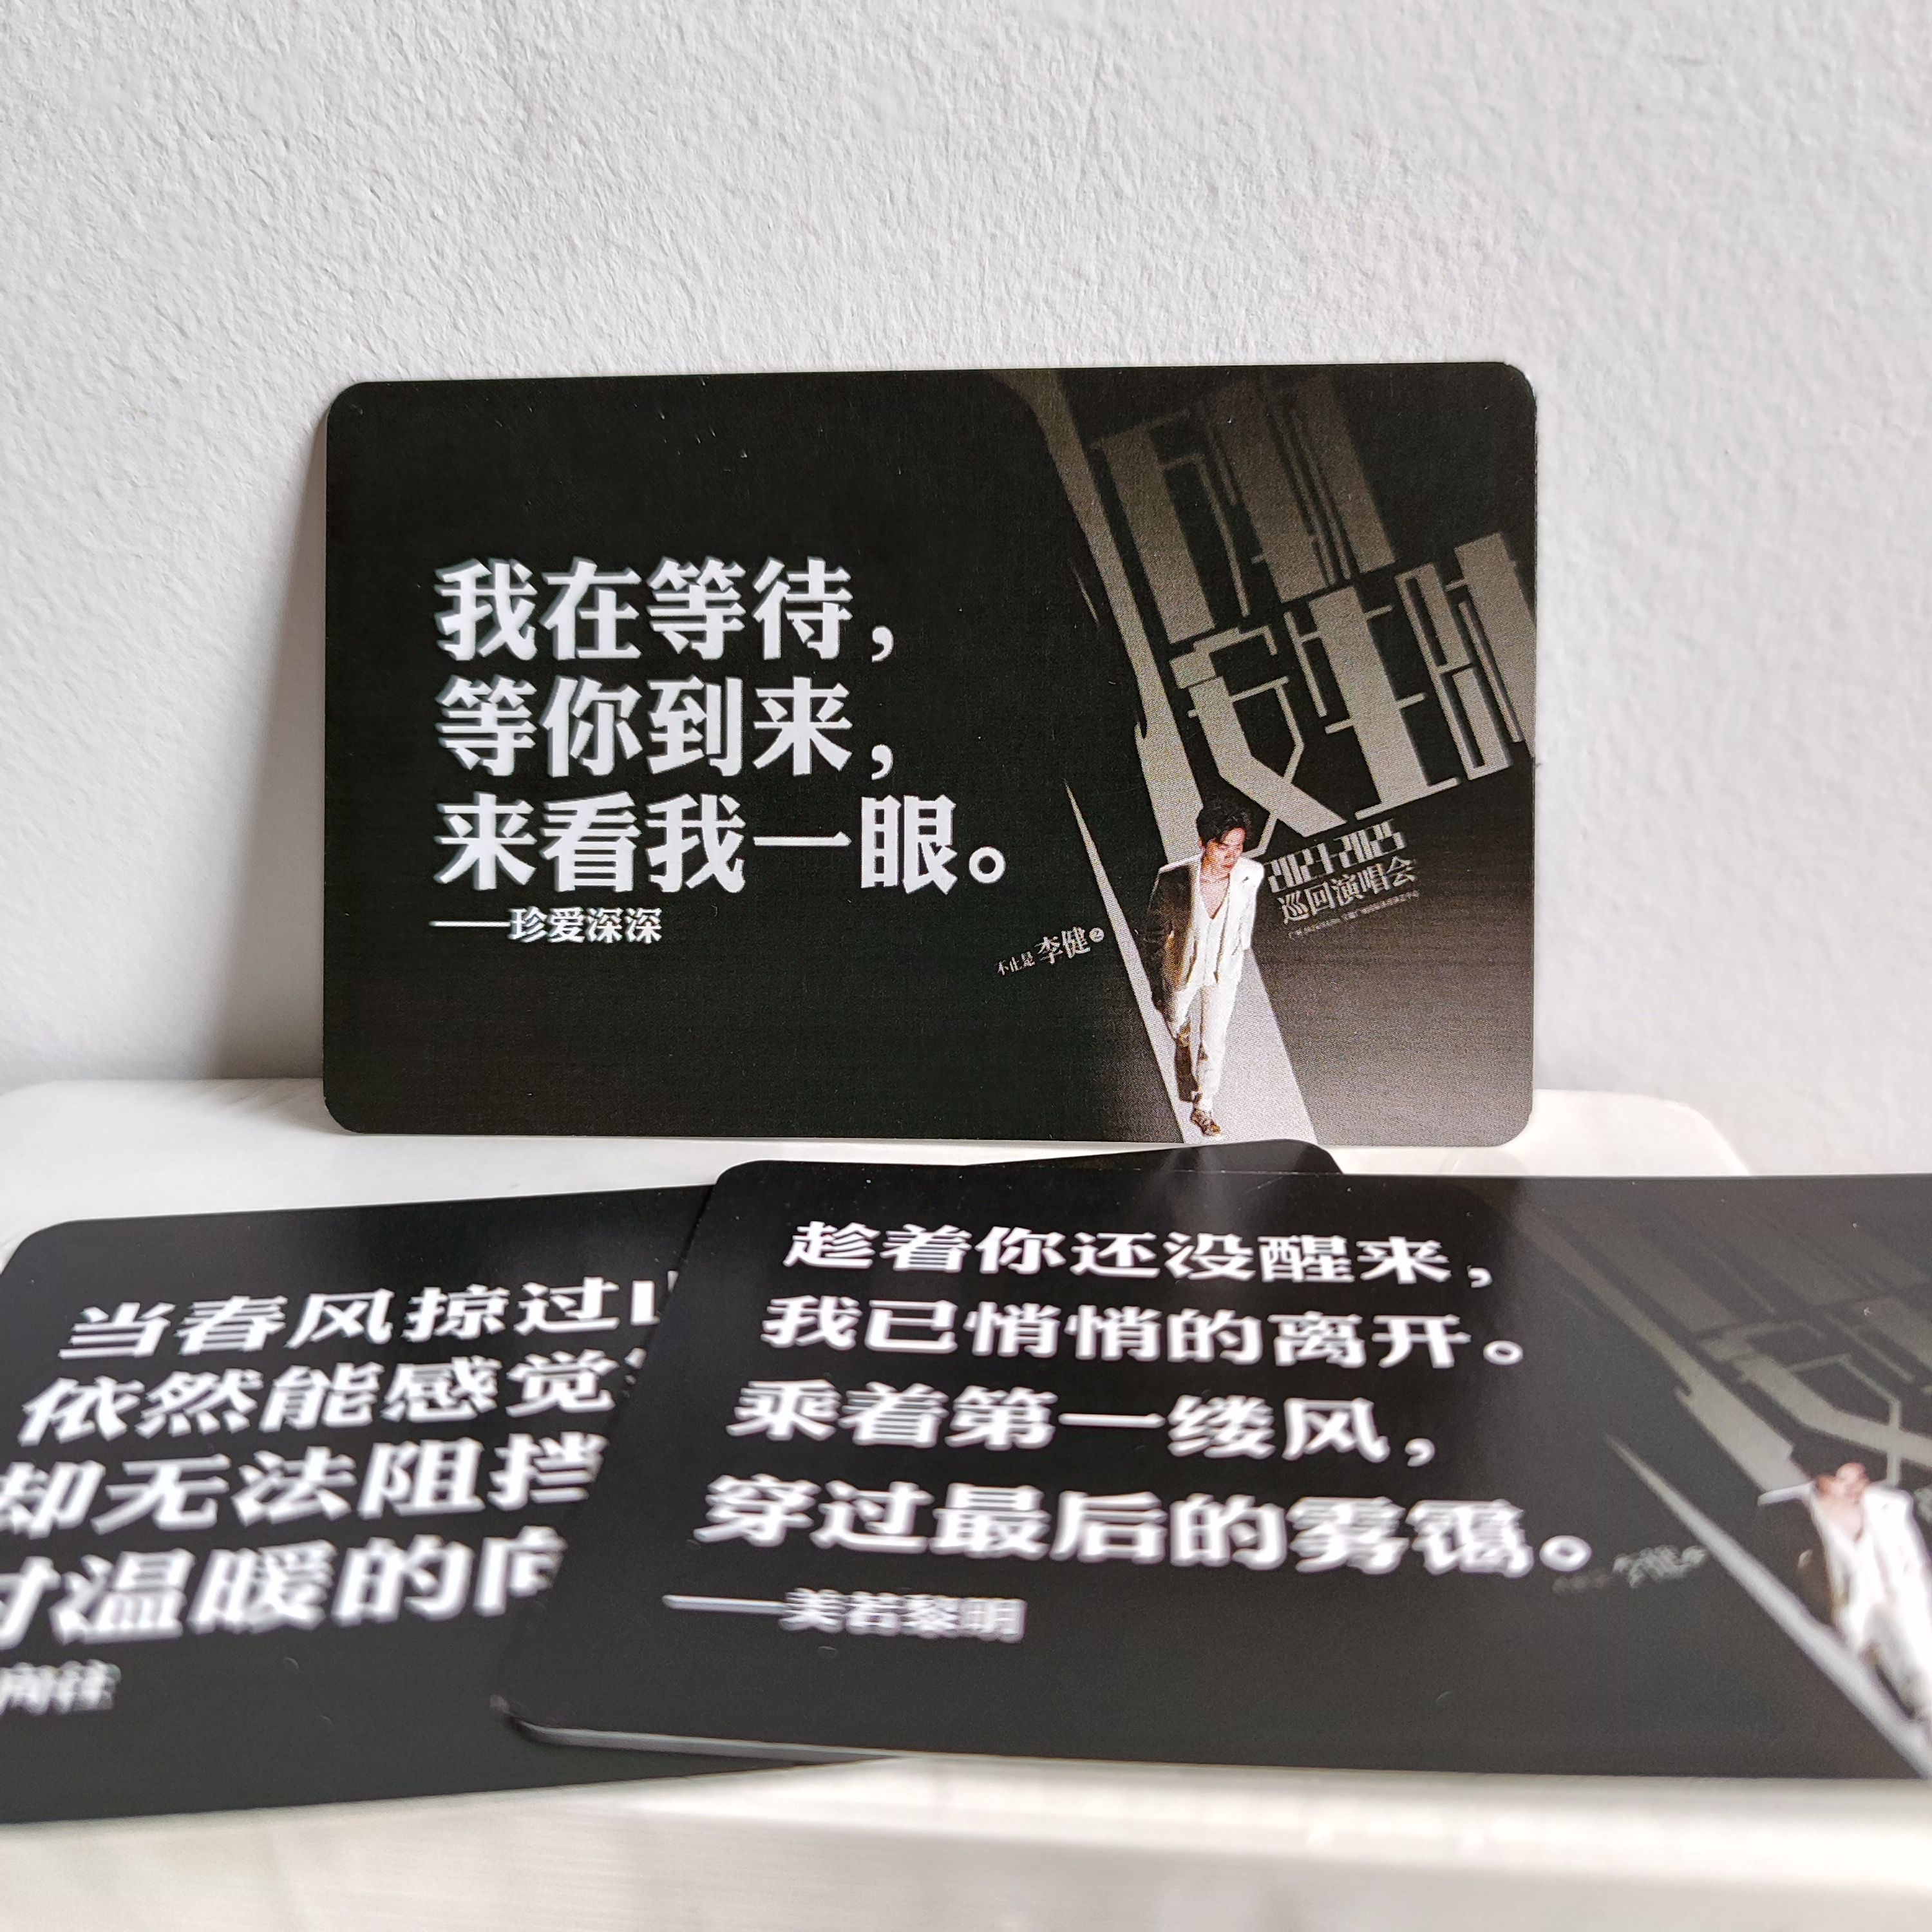 歌手李健演唱会应援周边小卡片30枚万物安生时创意文字歌词纪念品